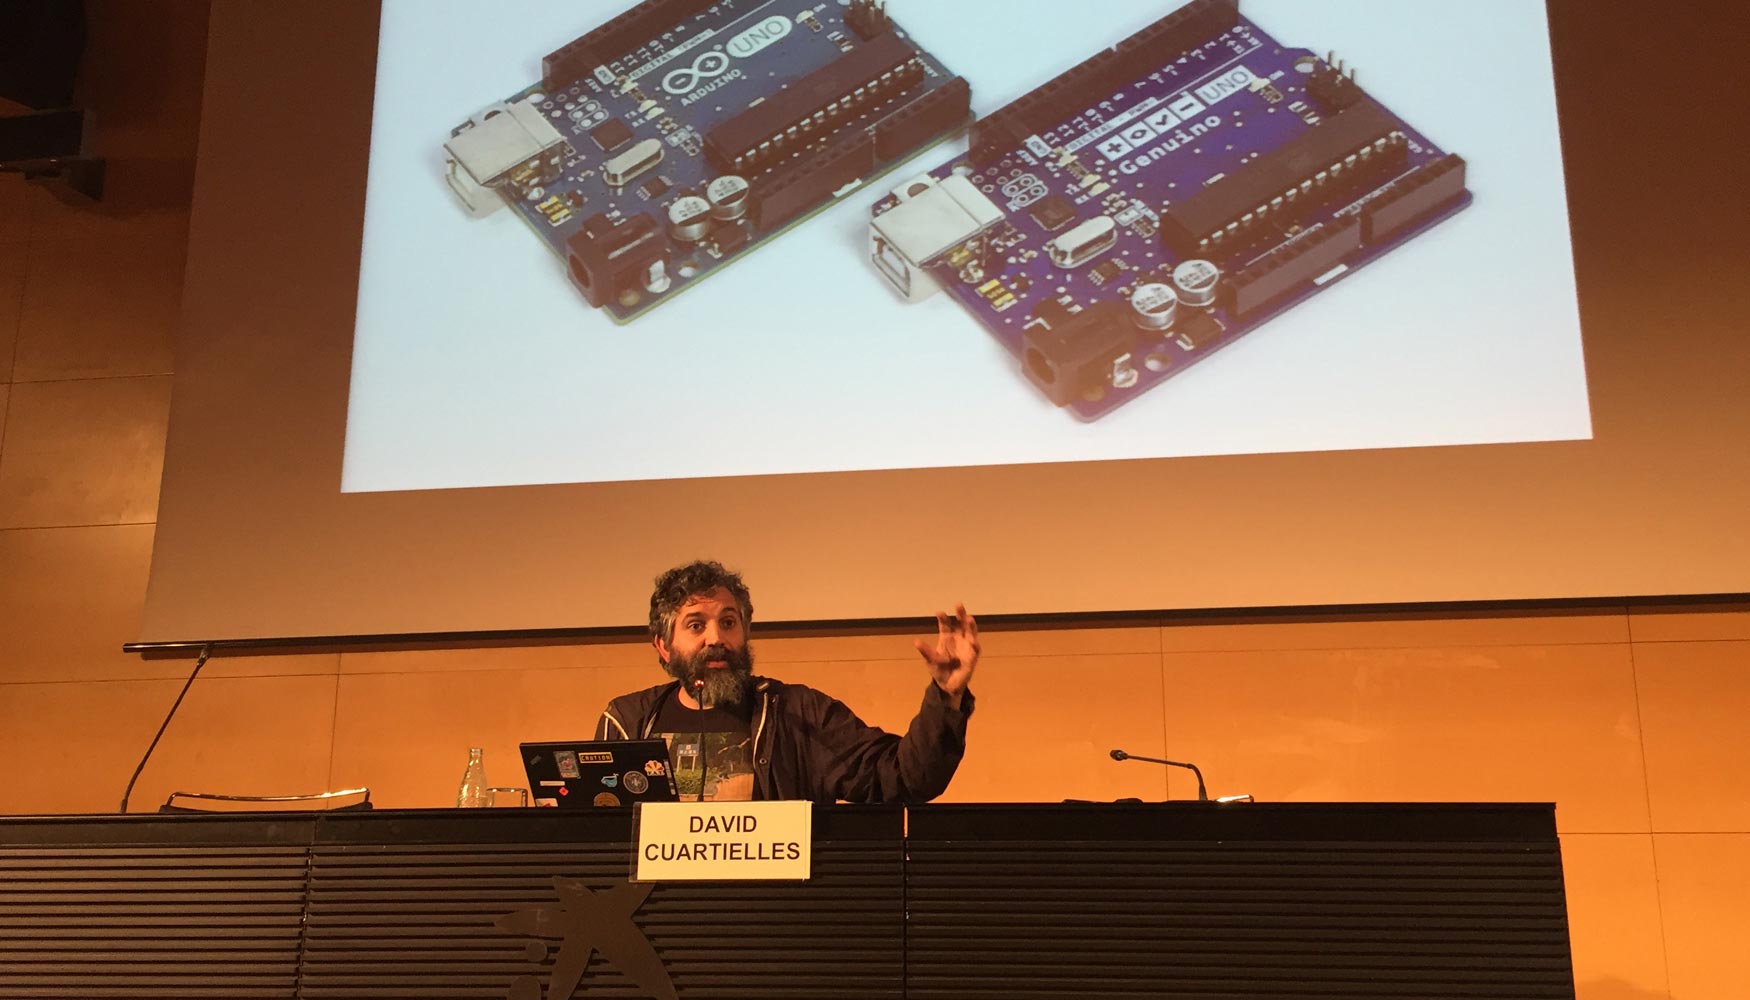 David Cuartielles, cocreador de Arduino